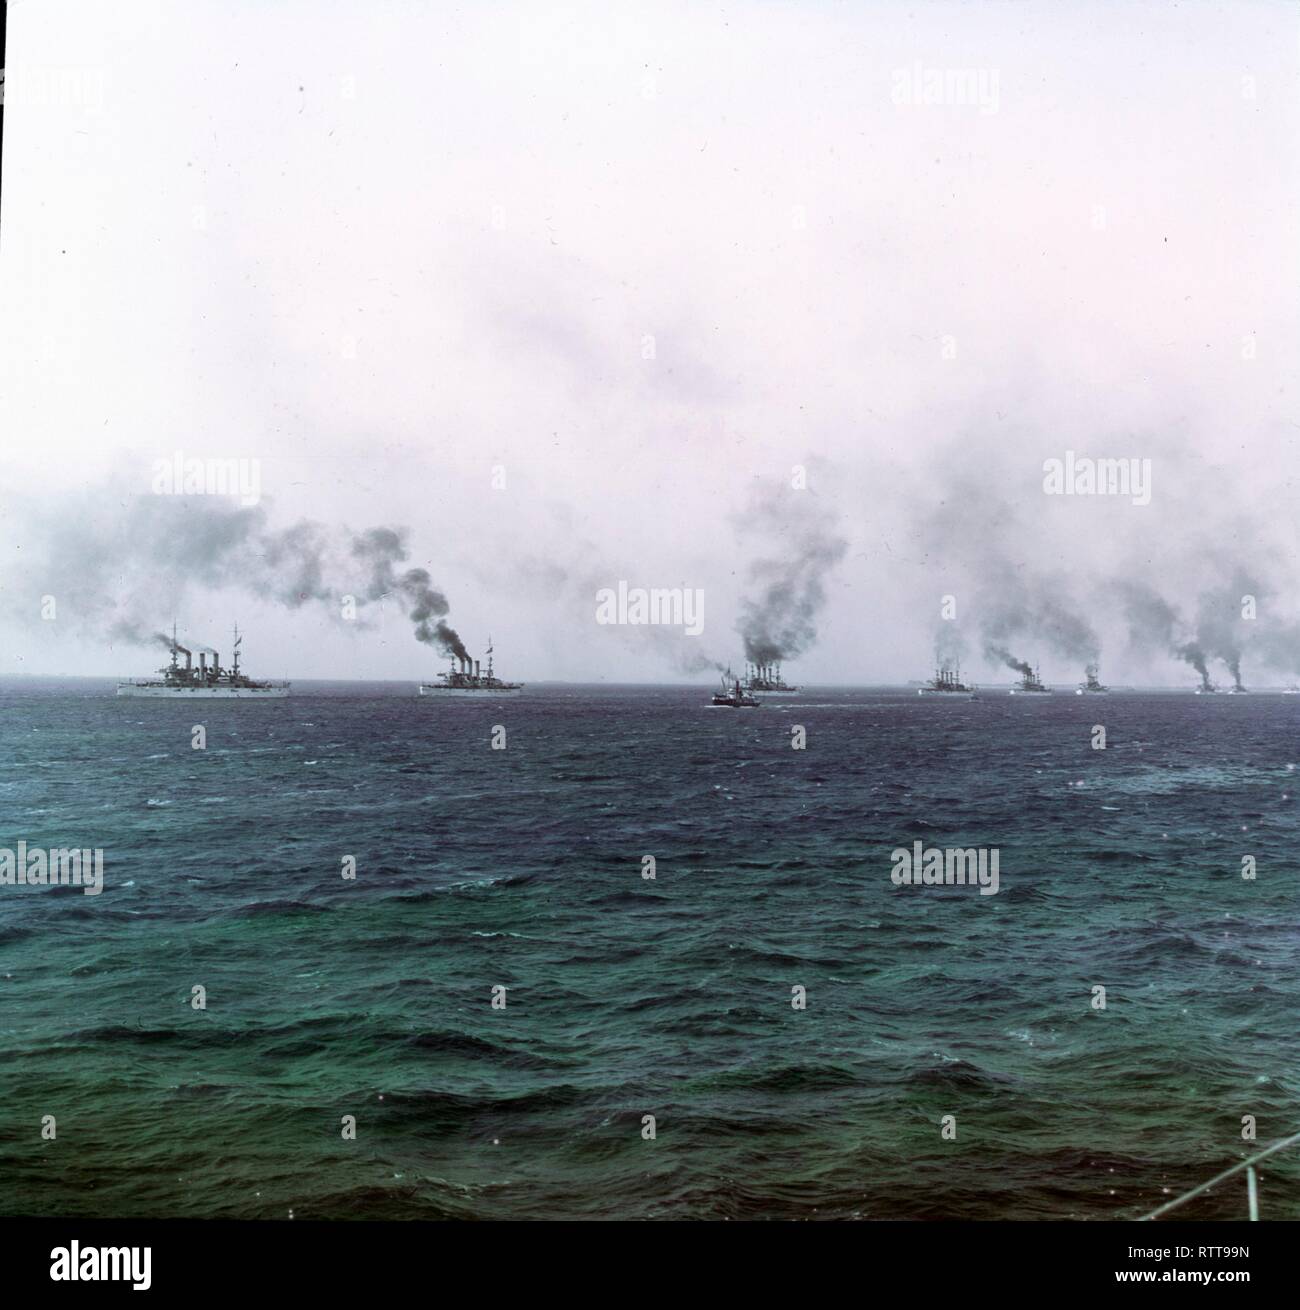 Photo colorisée de plusieurs cutleships en mer, vers 1905. (Photo de Burton Holmes) Banque D'Images